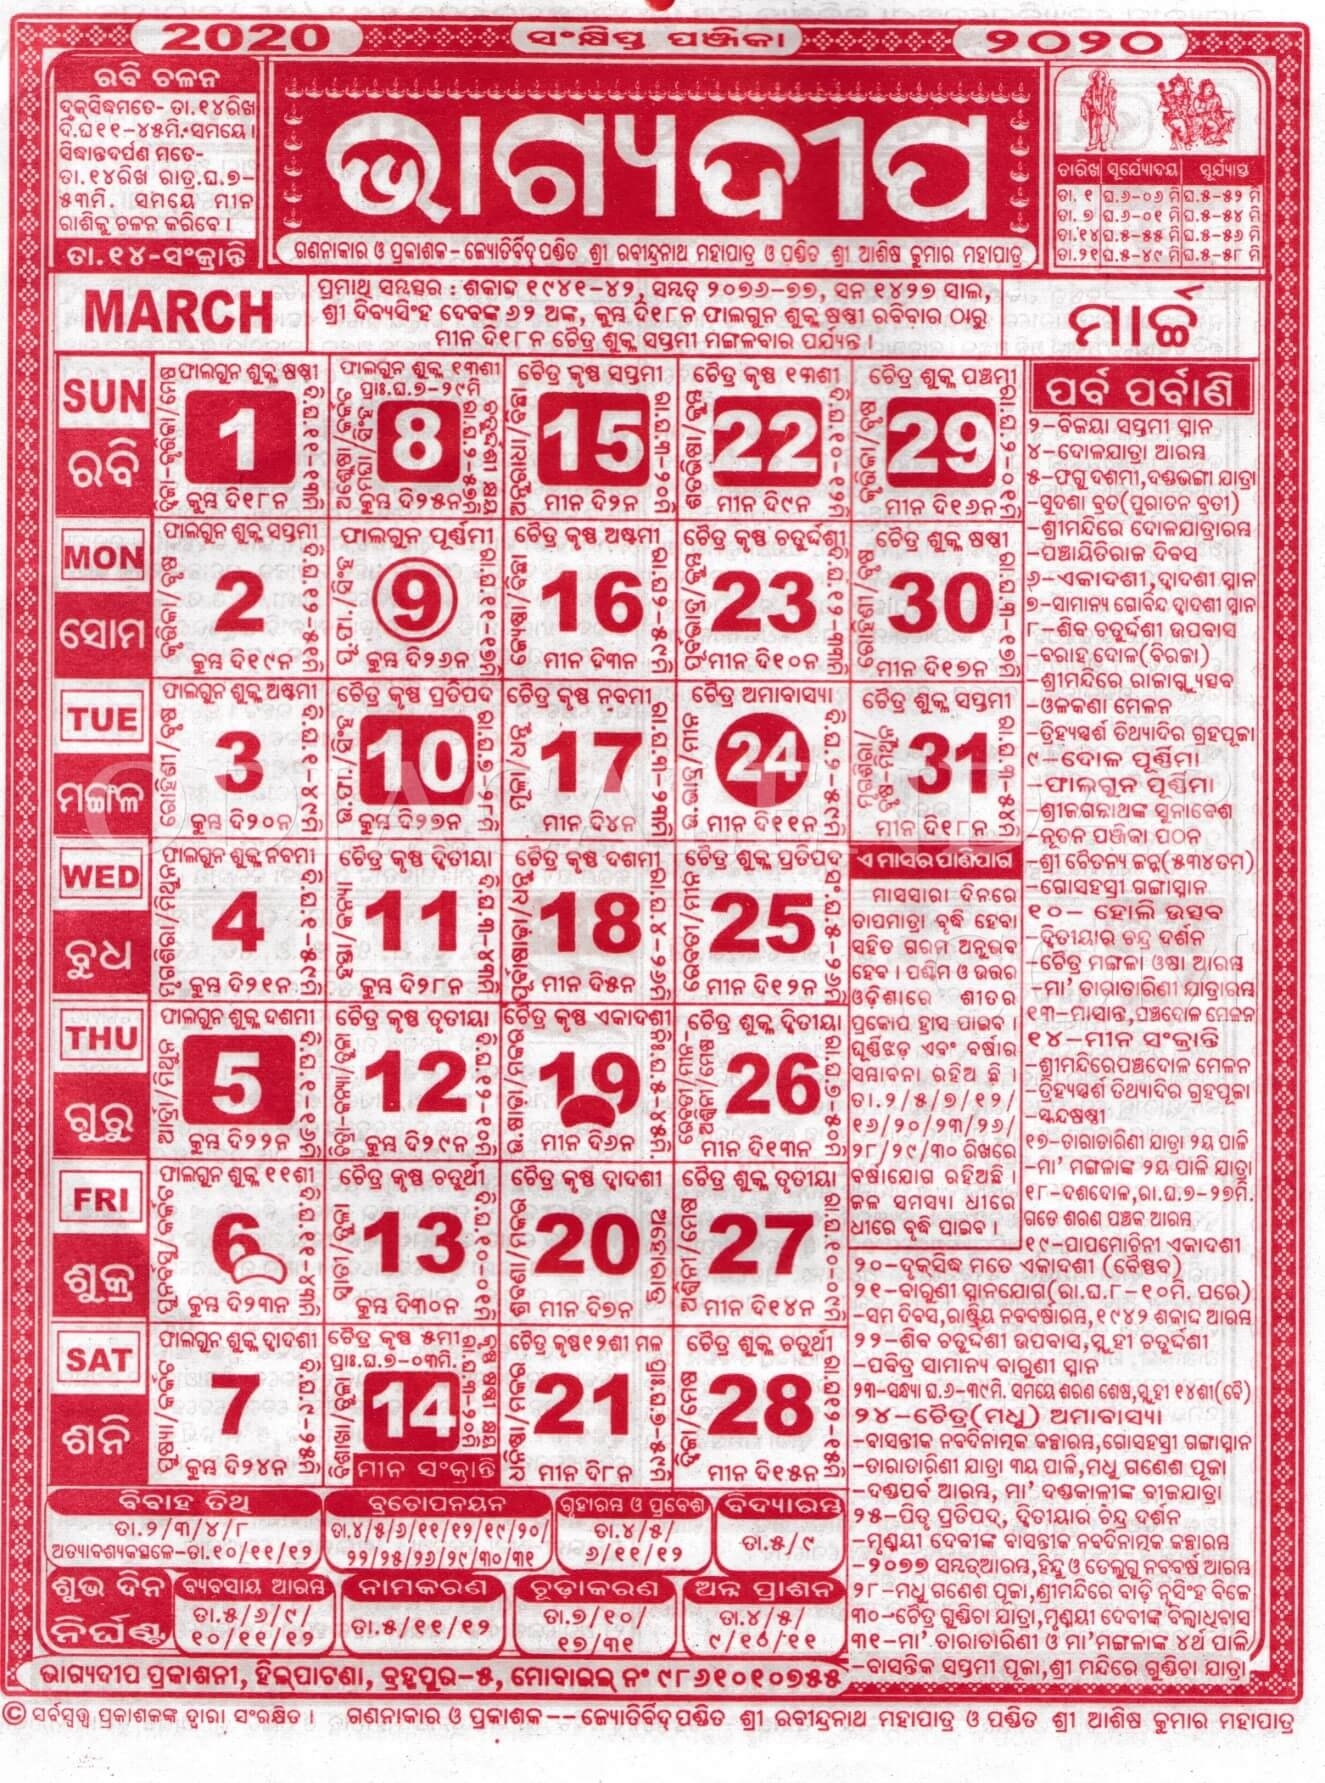 Bhagyadeep Odia Calendar March 2020 - Download Hd Quality July 2021 Calendar Odia